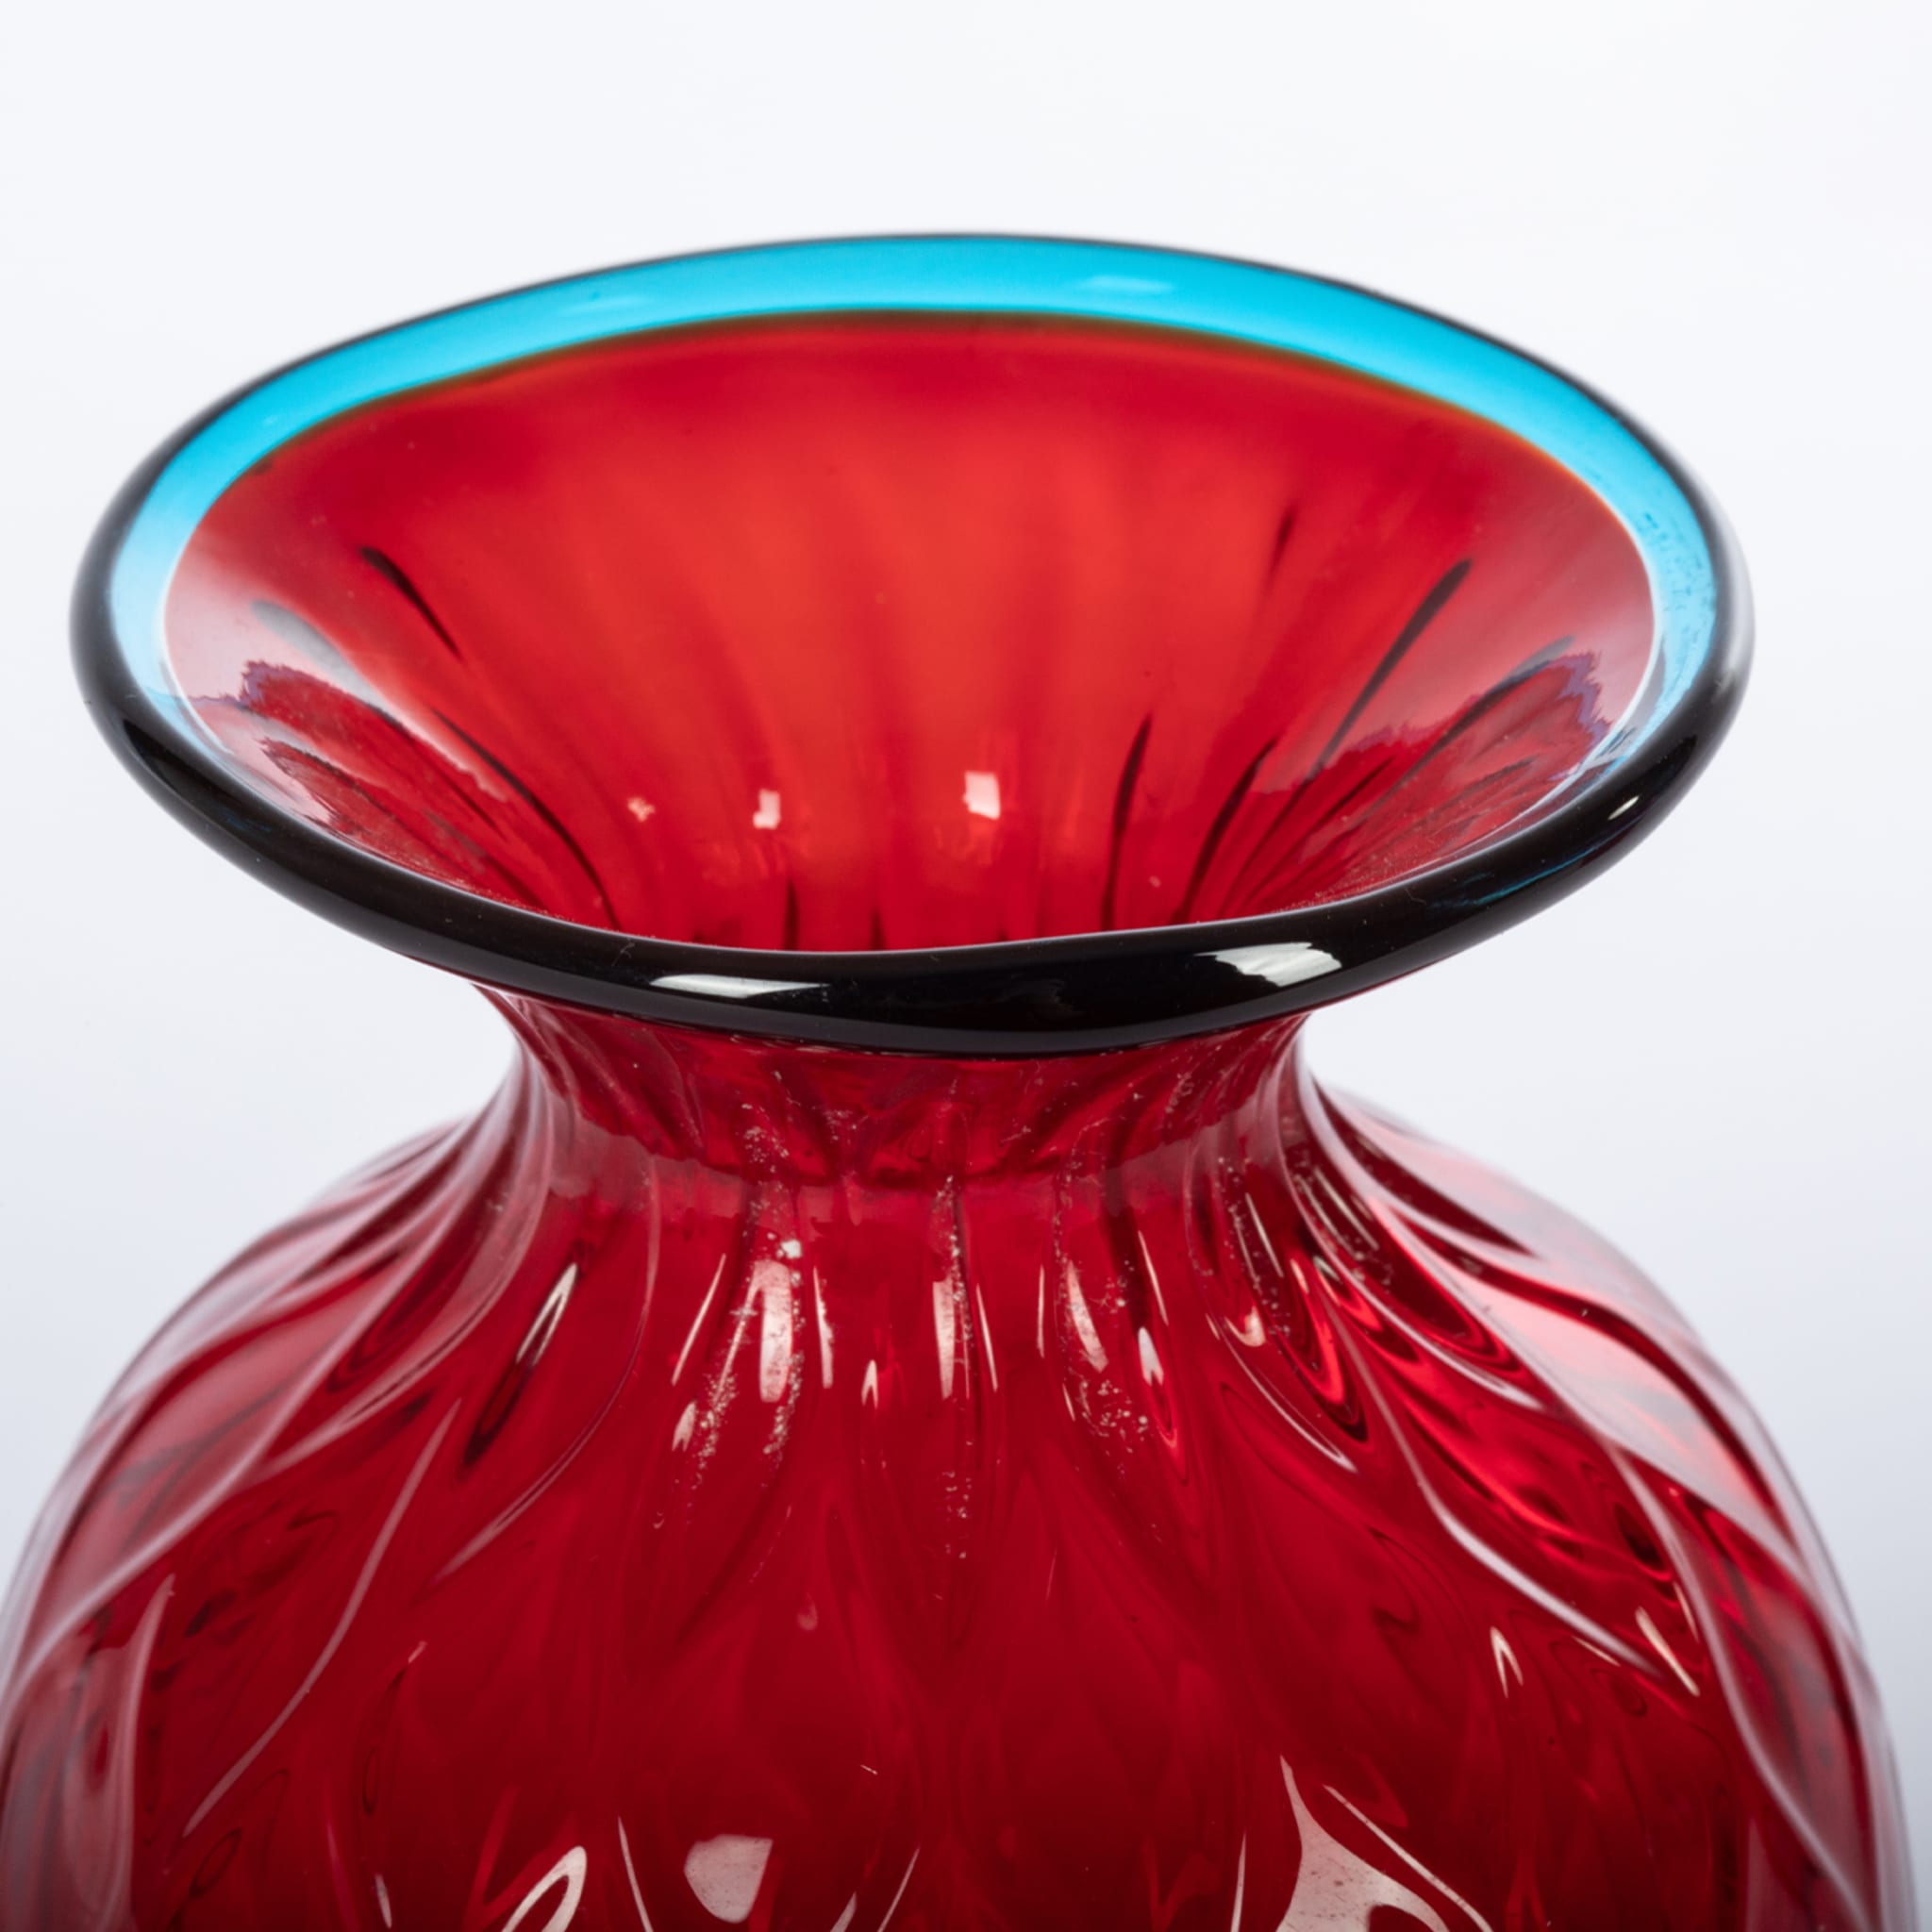 1950 Große rote Balloton-Vase mit hellblauem Rand - Alternative Ansicht 5